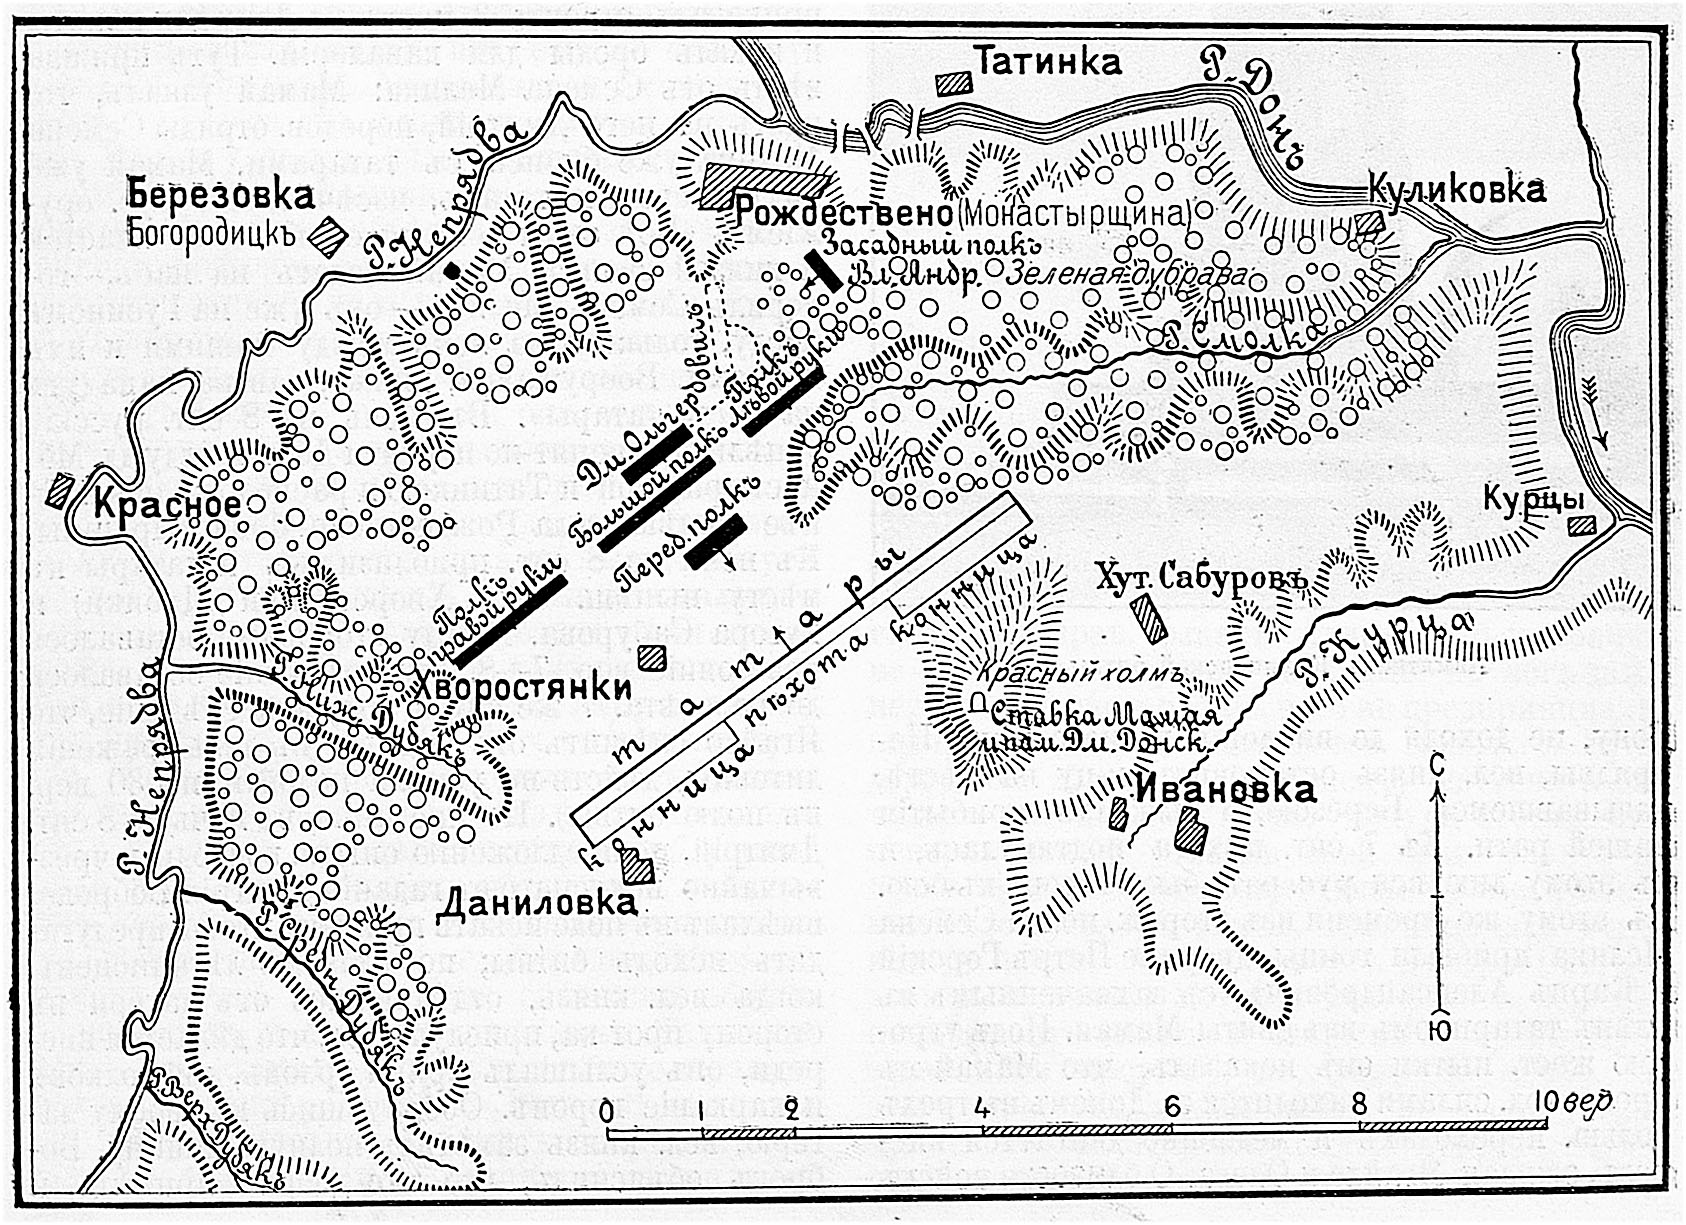 Схема Куликовской битвы (1380)